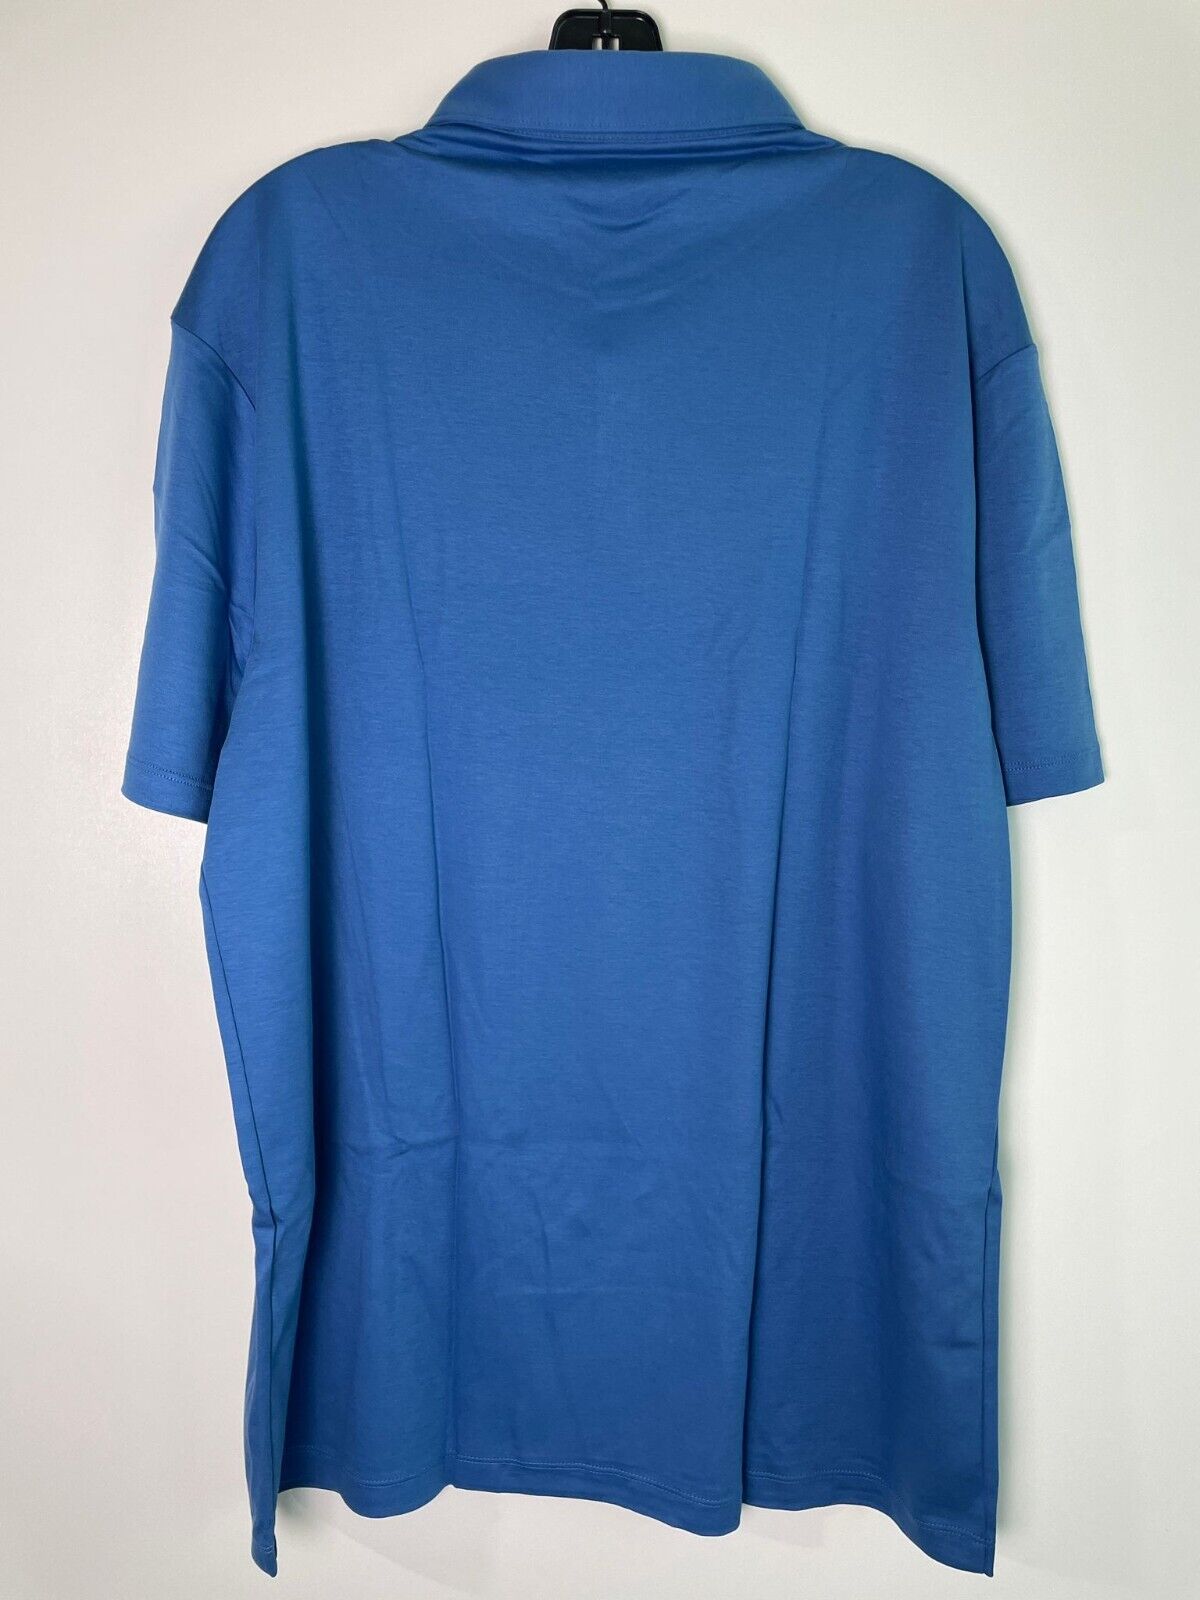 Charles Tyrwhitt Mens XL Smart Jersey Polo Shirt Golf Ocean Blue Short Sleeve